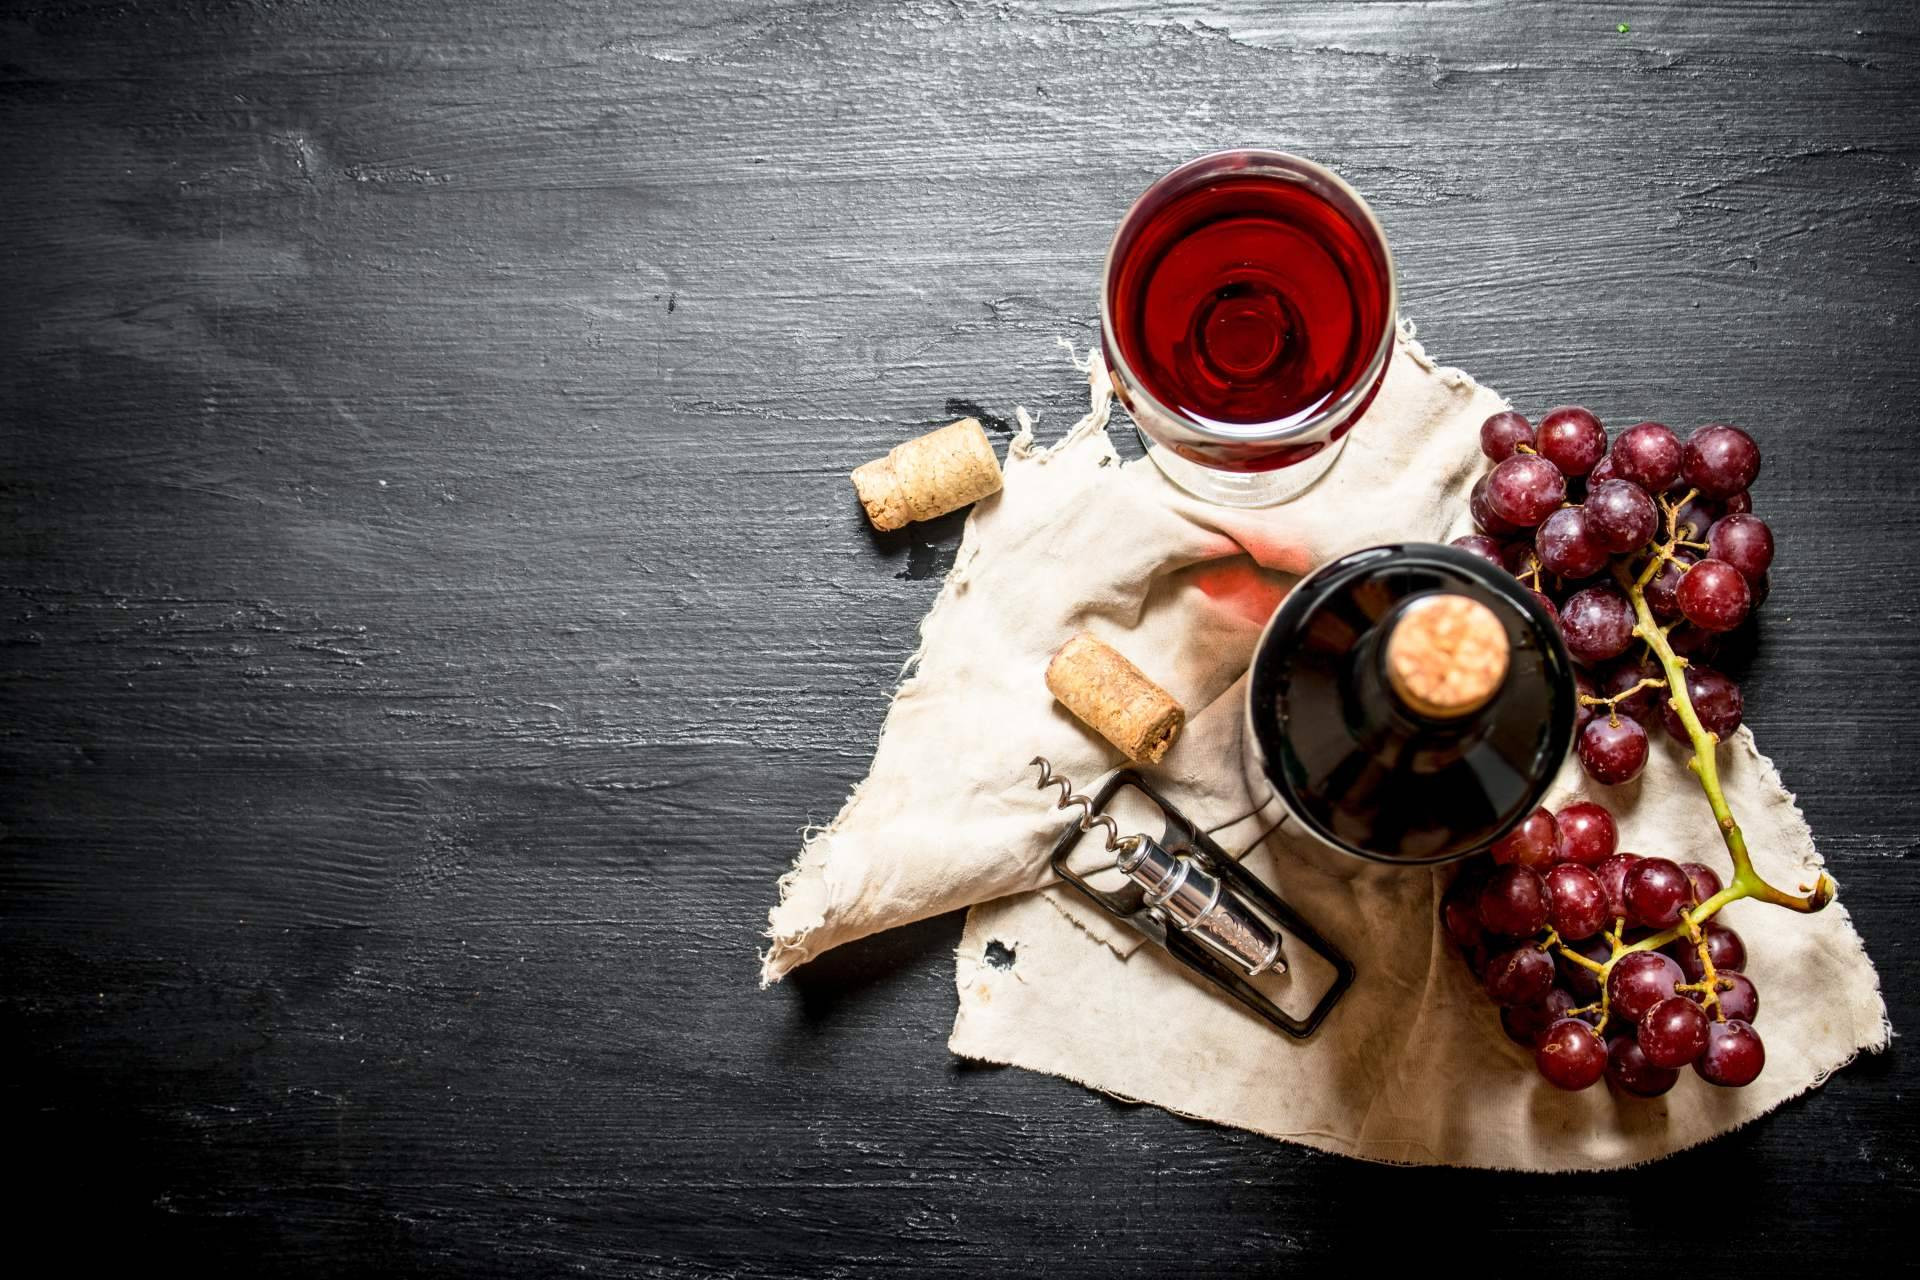  La importancia de un buen vino como complemento de una dieta equilibrada 